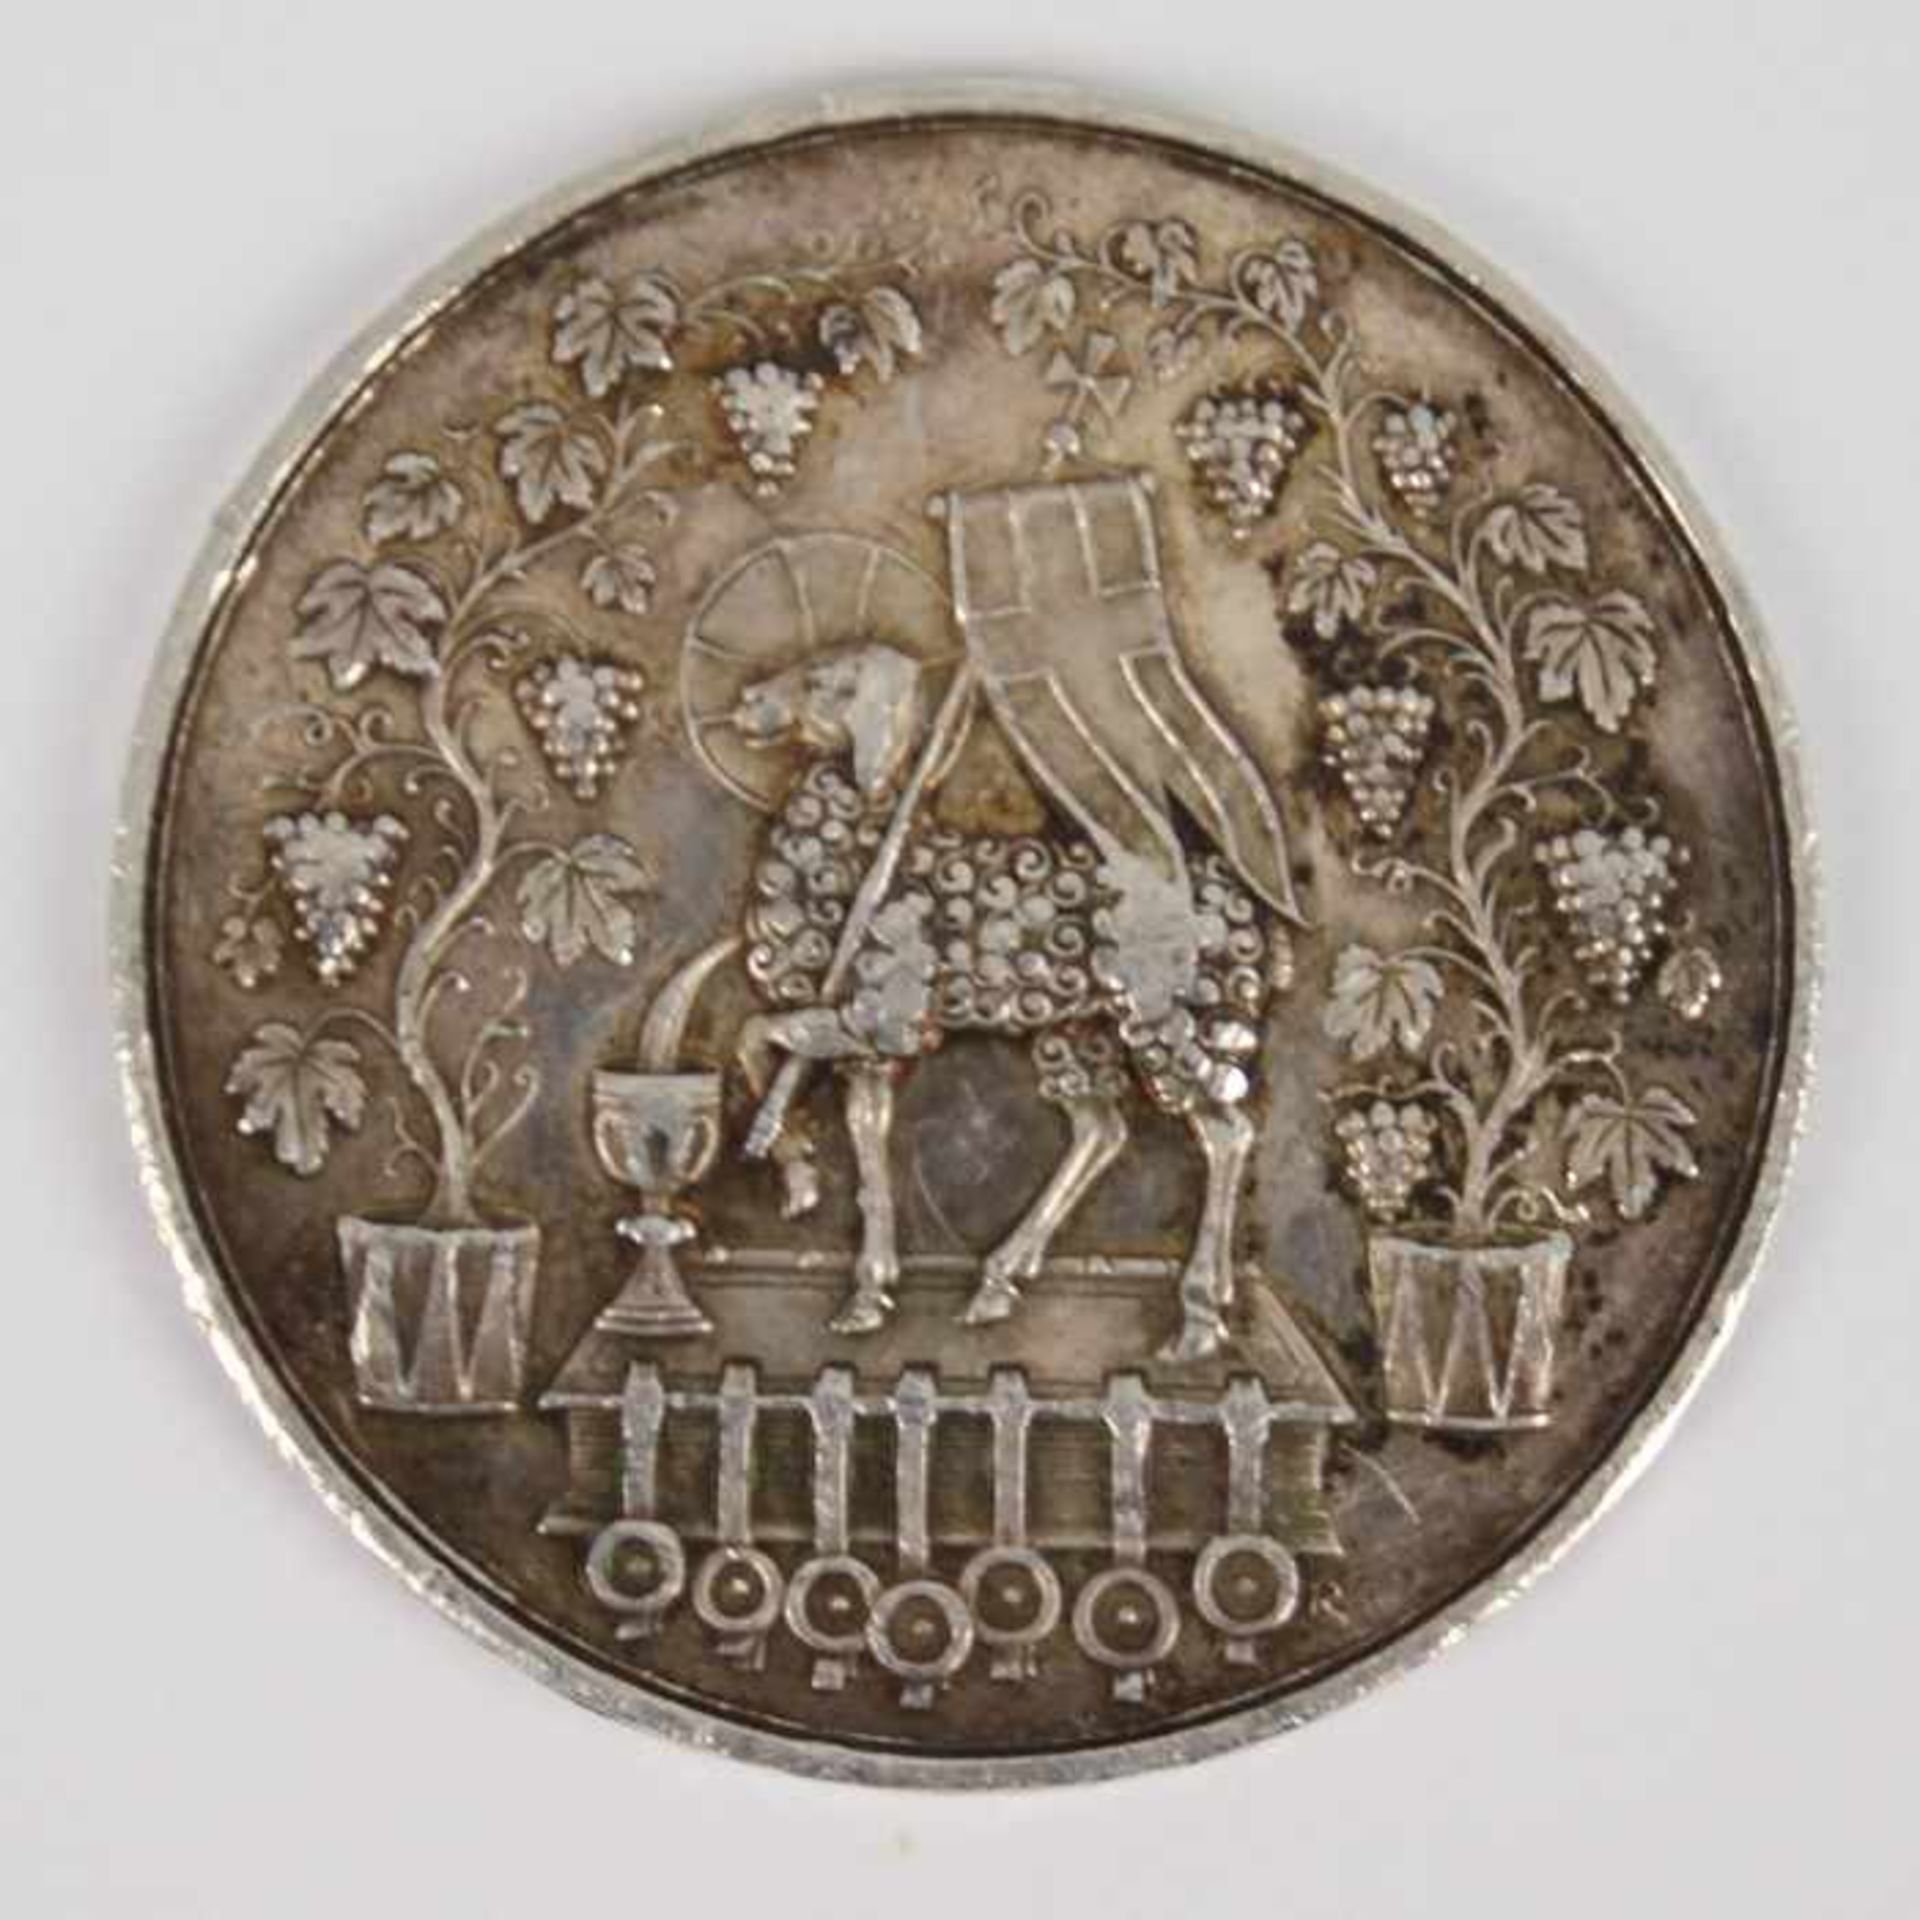 SilbermedailleSi 999, Medaillenkunst, Taufe im Jordan, Lamm mit Fahne, G 19,8 g, D 4 cm, vz - Bild 2 aus 2